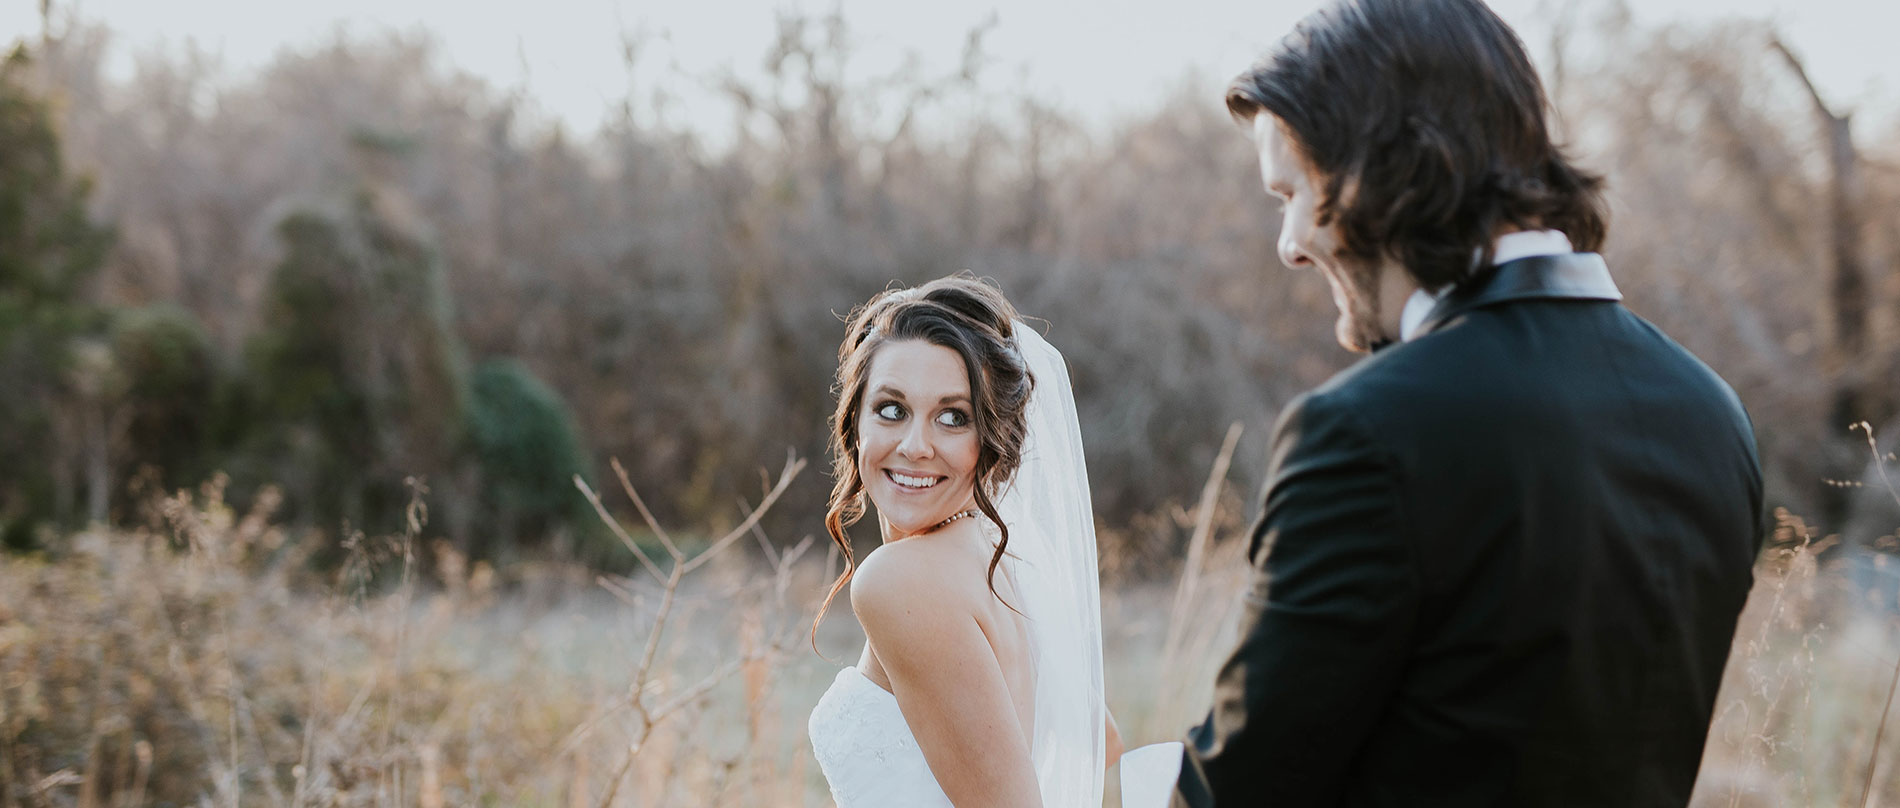 Estos serán los 10 momentos más emotivos en tu boda | La Bastilla